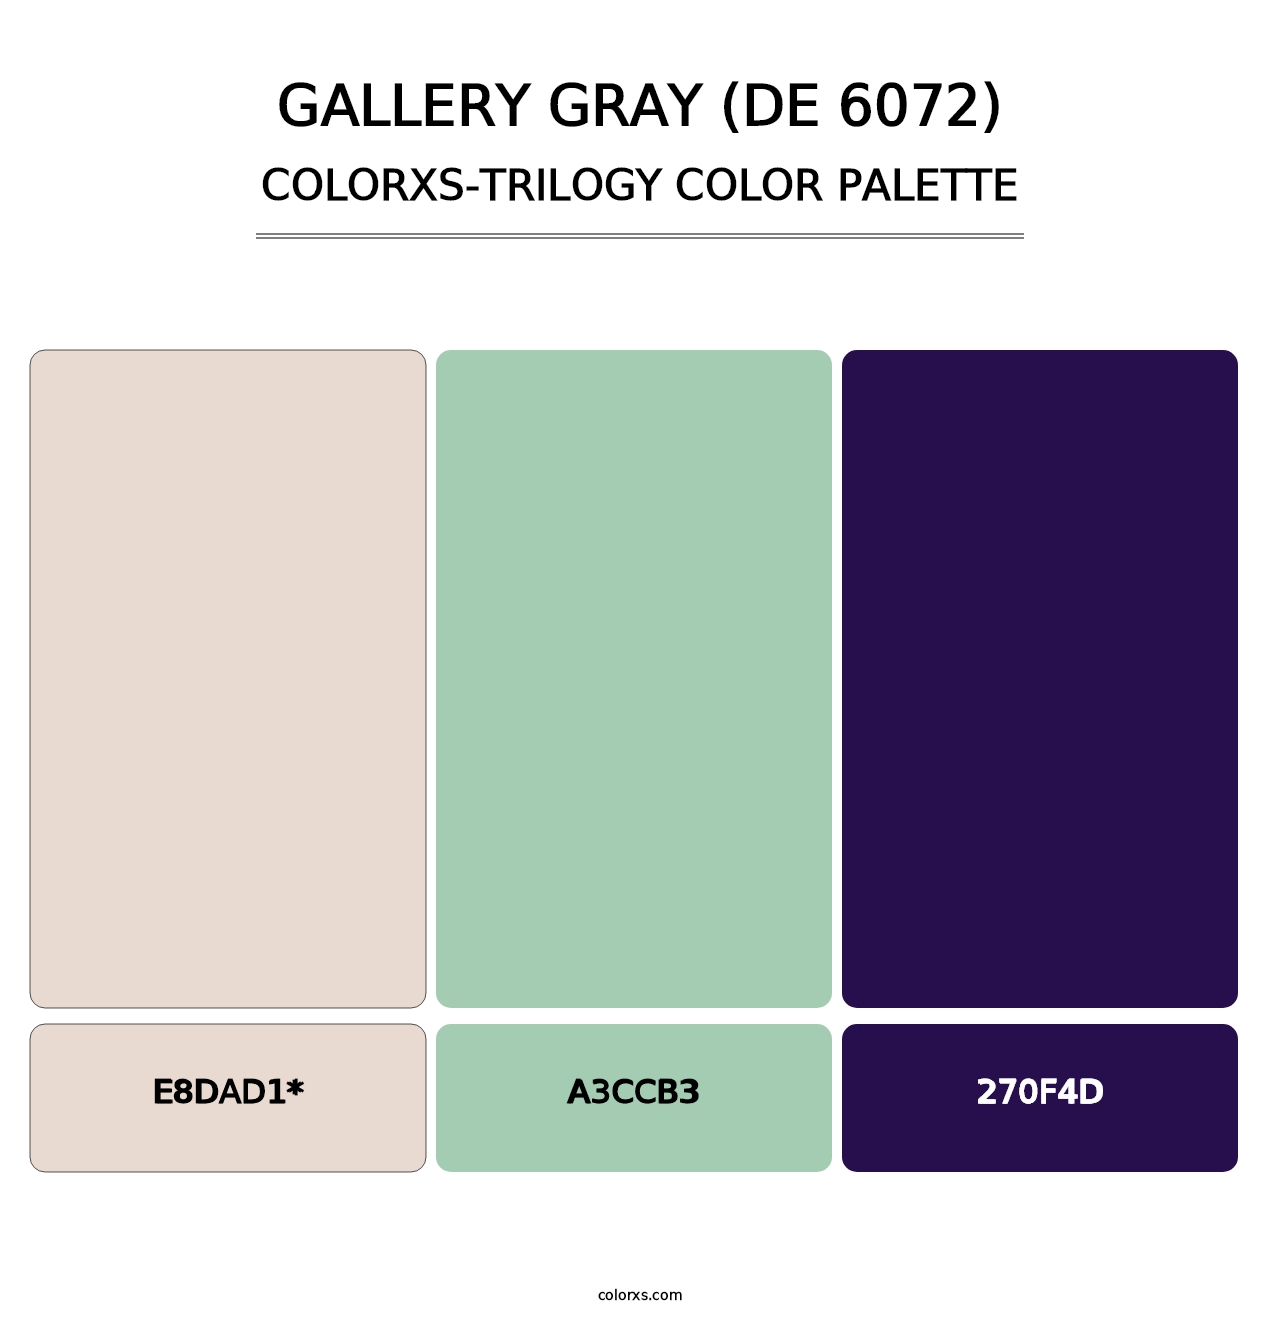 Gallery Gray (DE 6072) - Colorxs Trilogy Palette